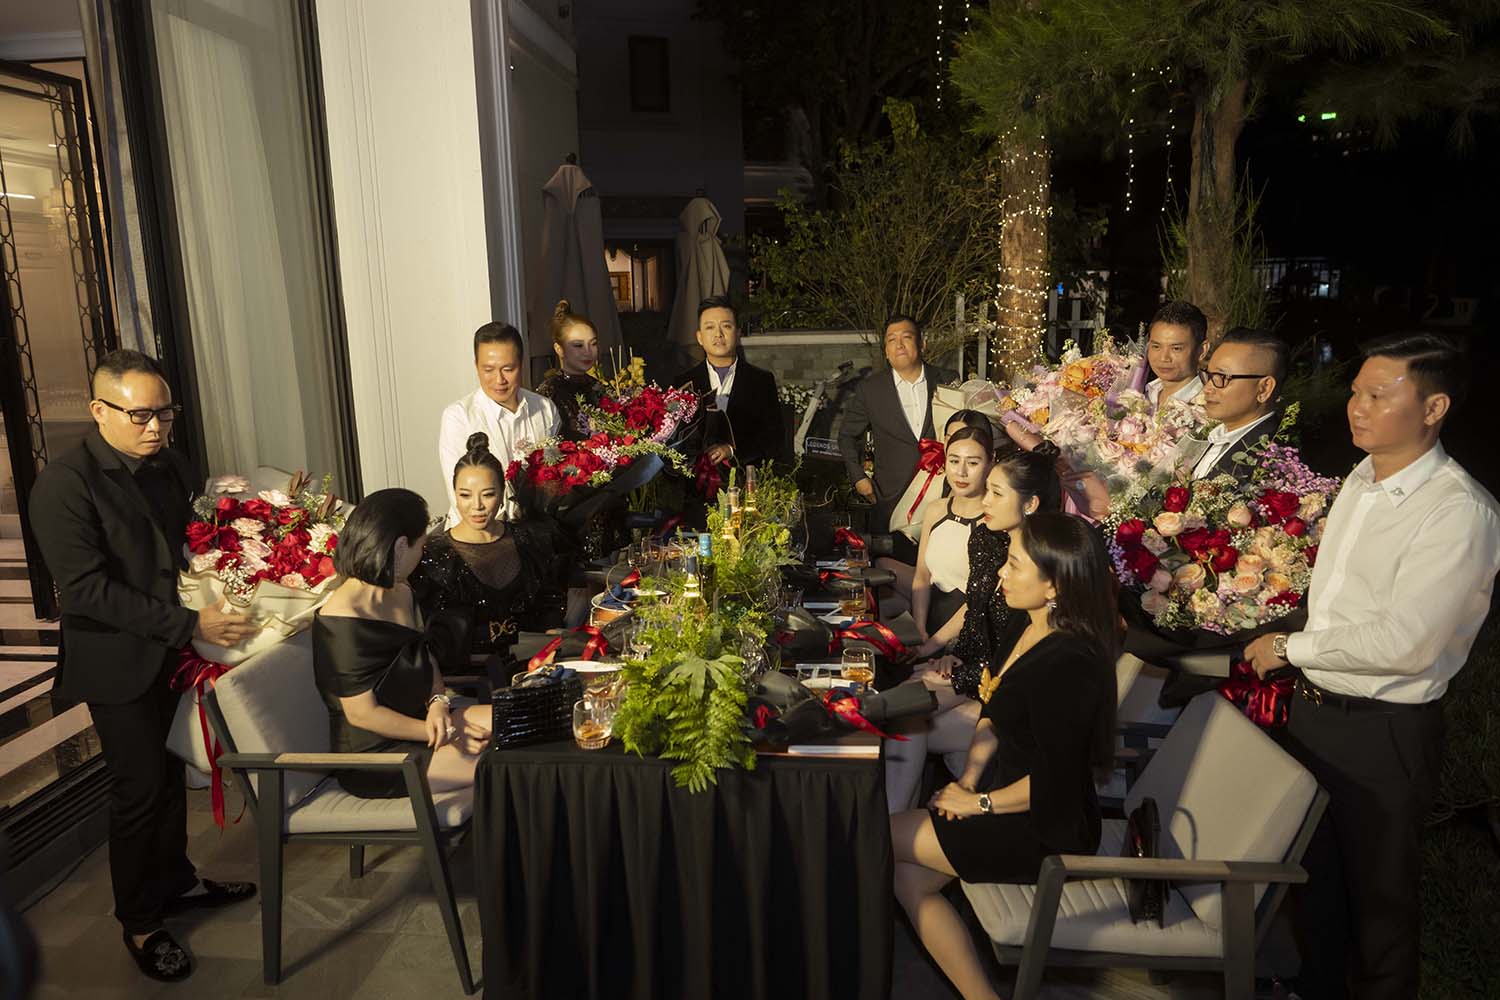 Tuấn Hưng tổ chức đêm nhạc dành cho vợ trong biệt thự 5 triệu đô - Ảnh 3.